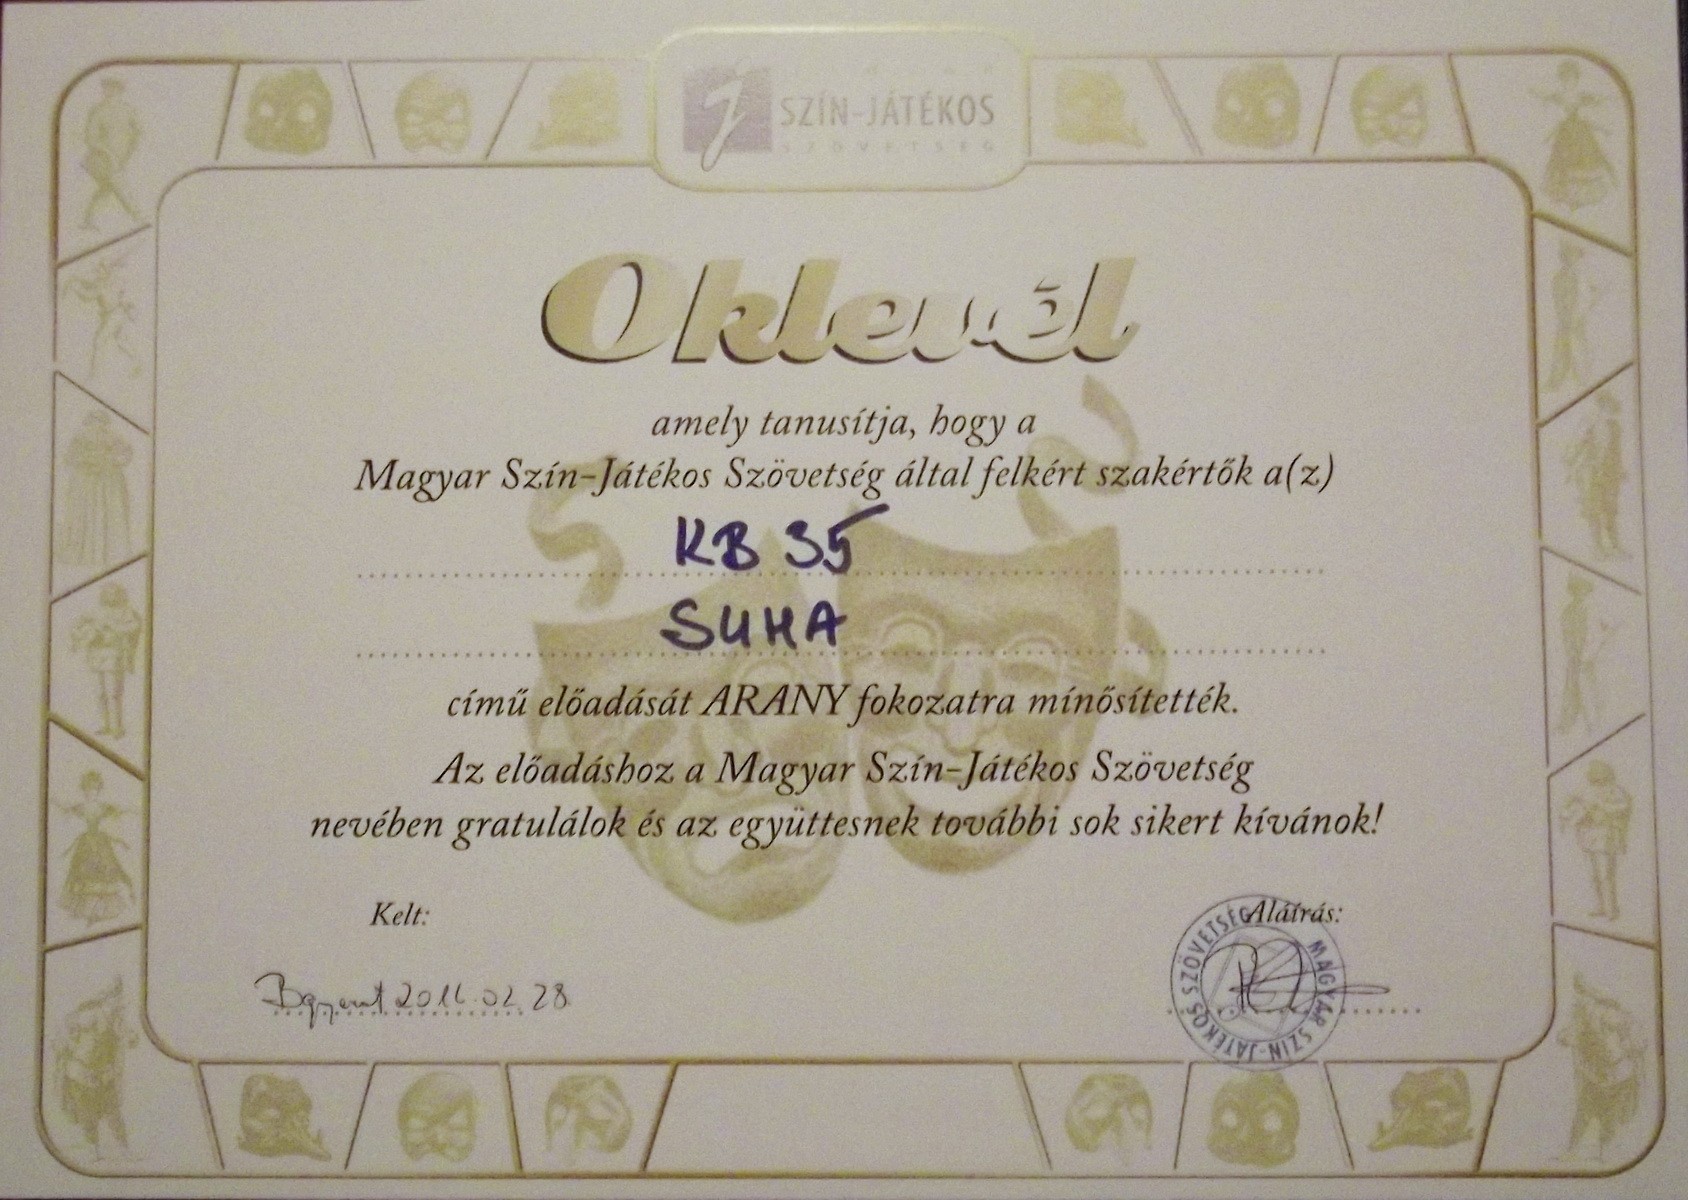 Oklevél, amely tanúsítja, hogy a Magyar Szín-Játékos Szövetség által felkért szakértők a Kb35 Suha című előadását ARANY fokozatra minősítették